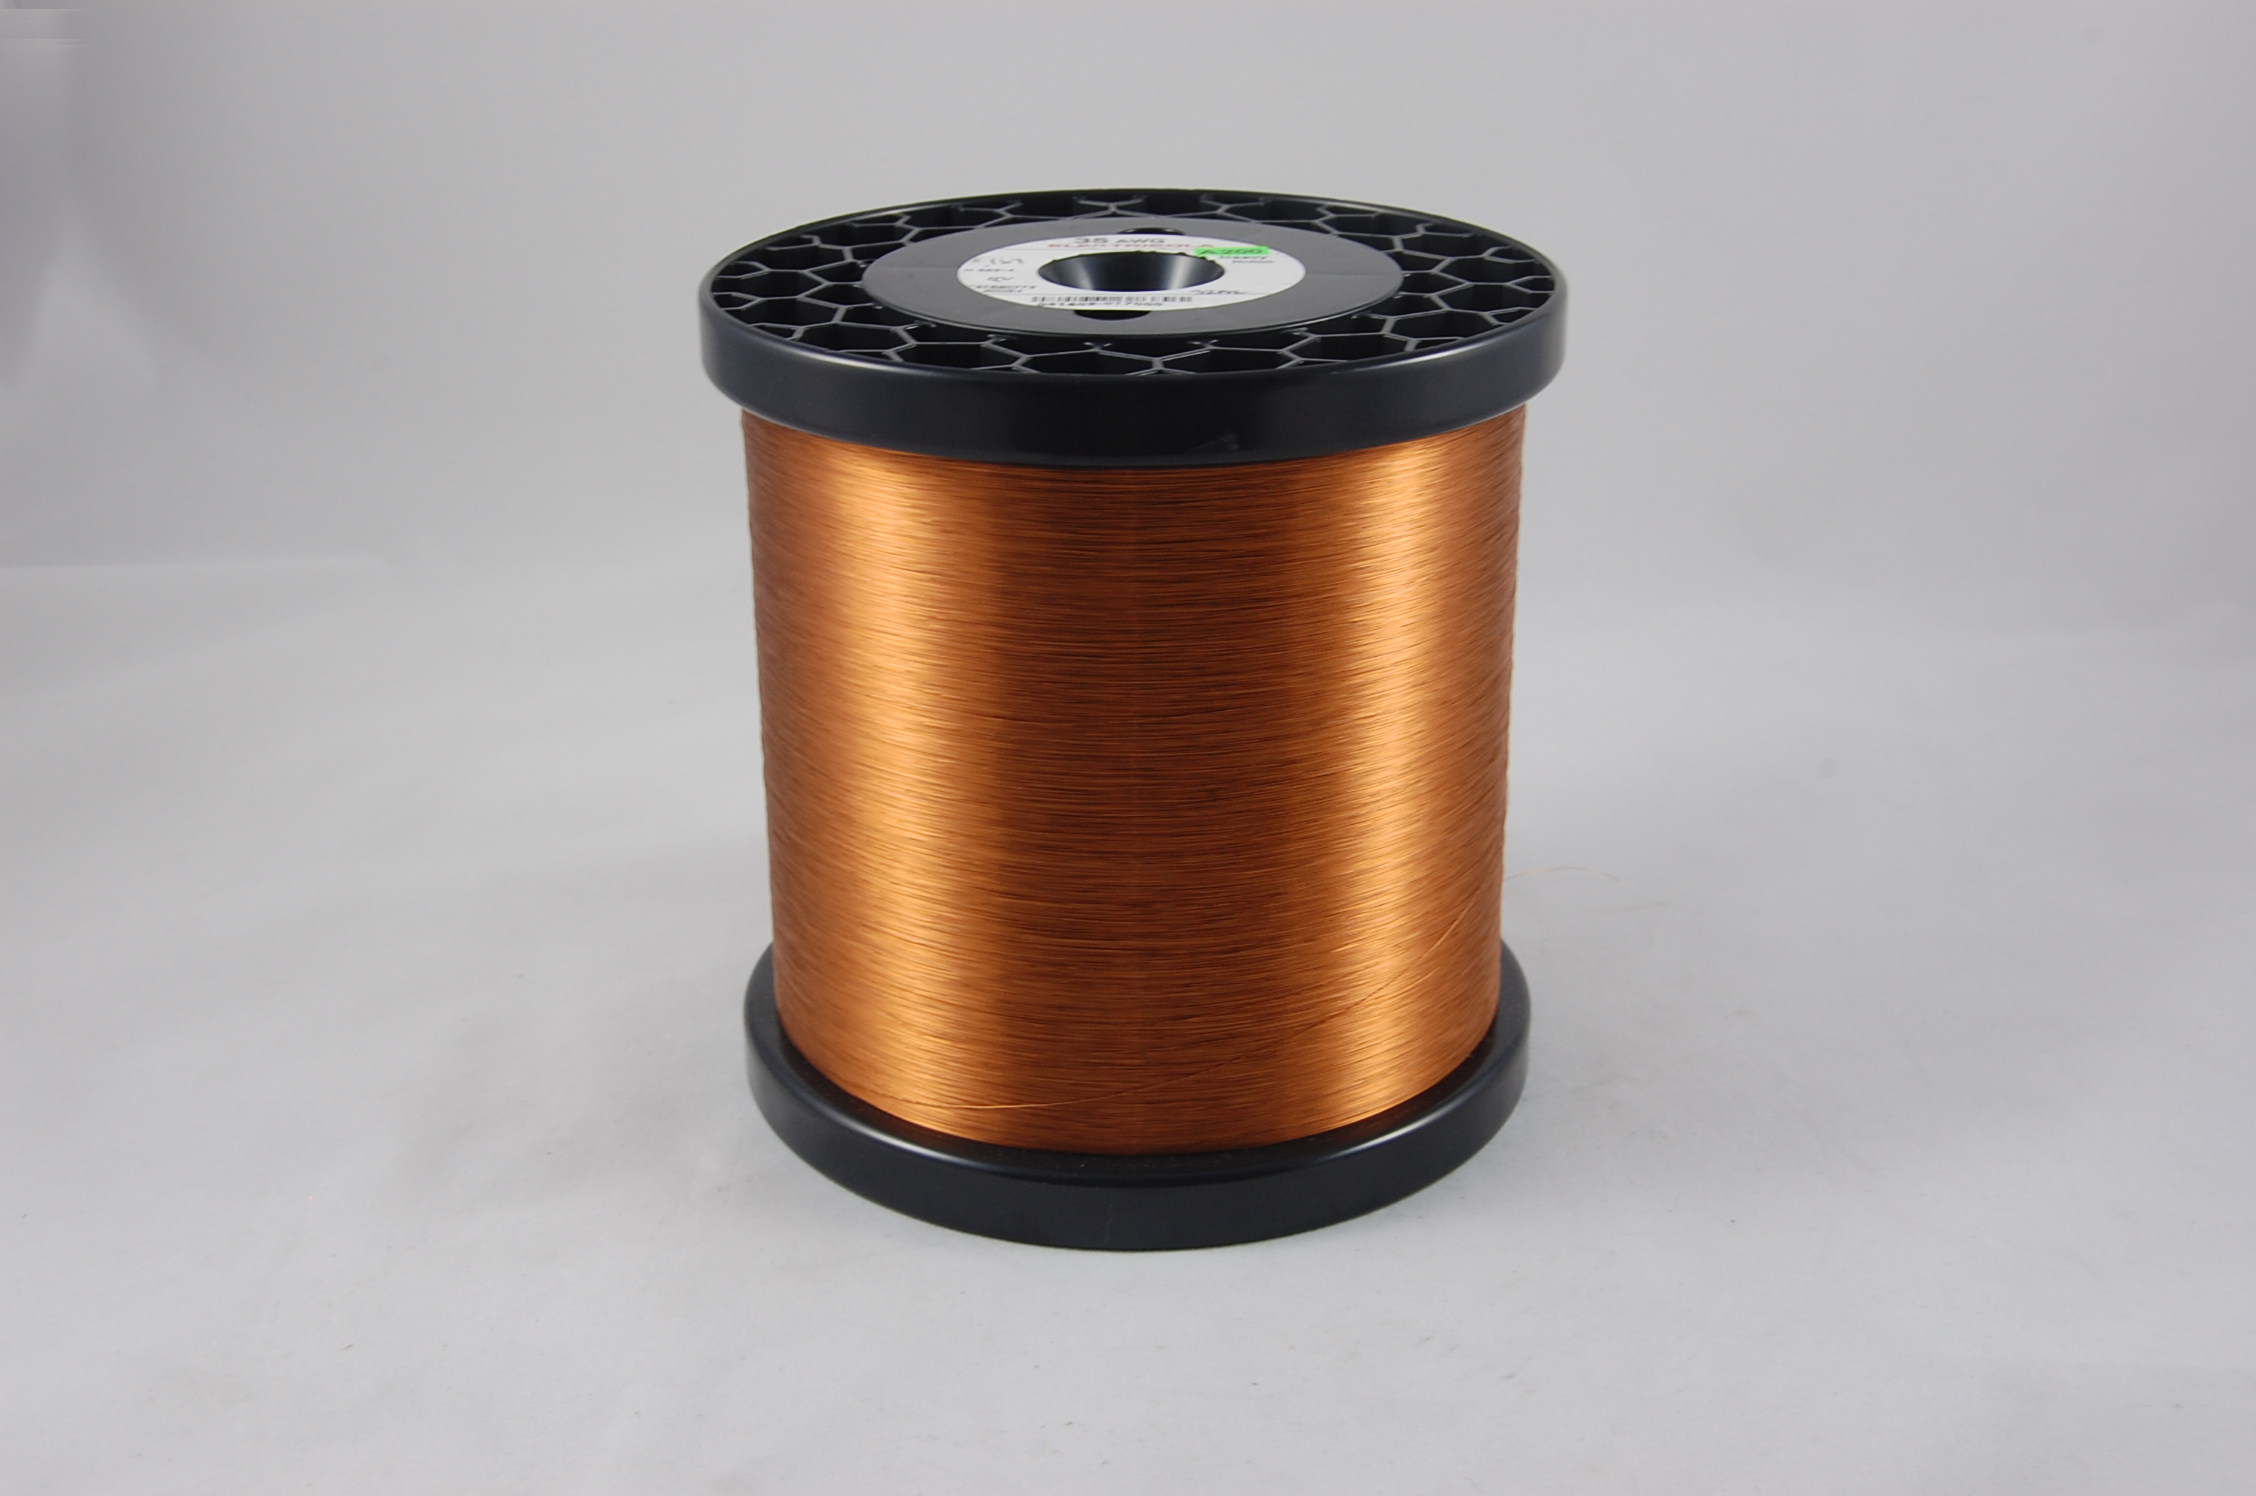 #46 Heavy Amidester 200 Round MW 74 Copper Magnet Wire 200°C, copper,  14 LB 6" x 6" spool (average wght.)